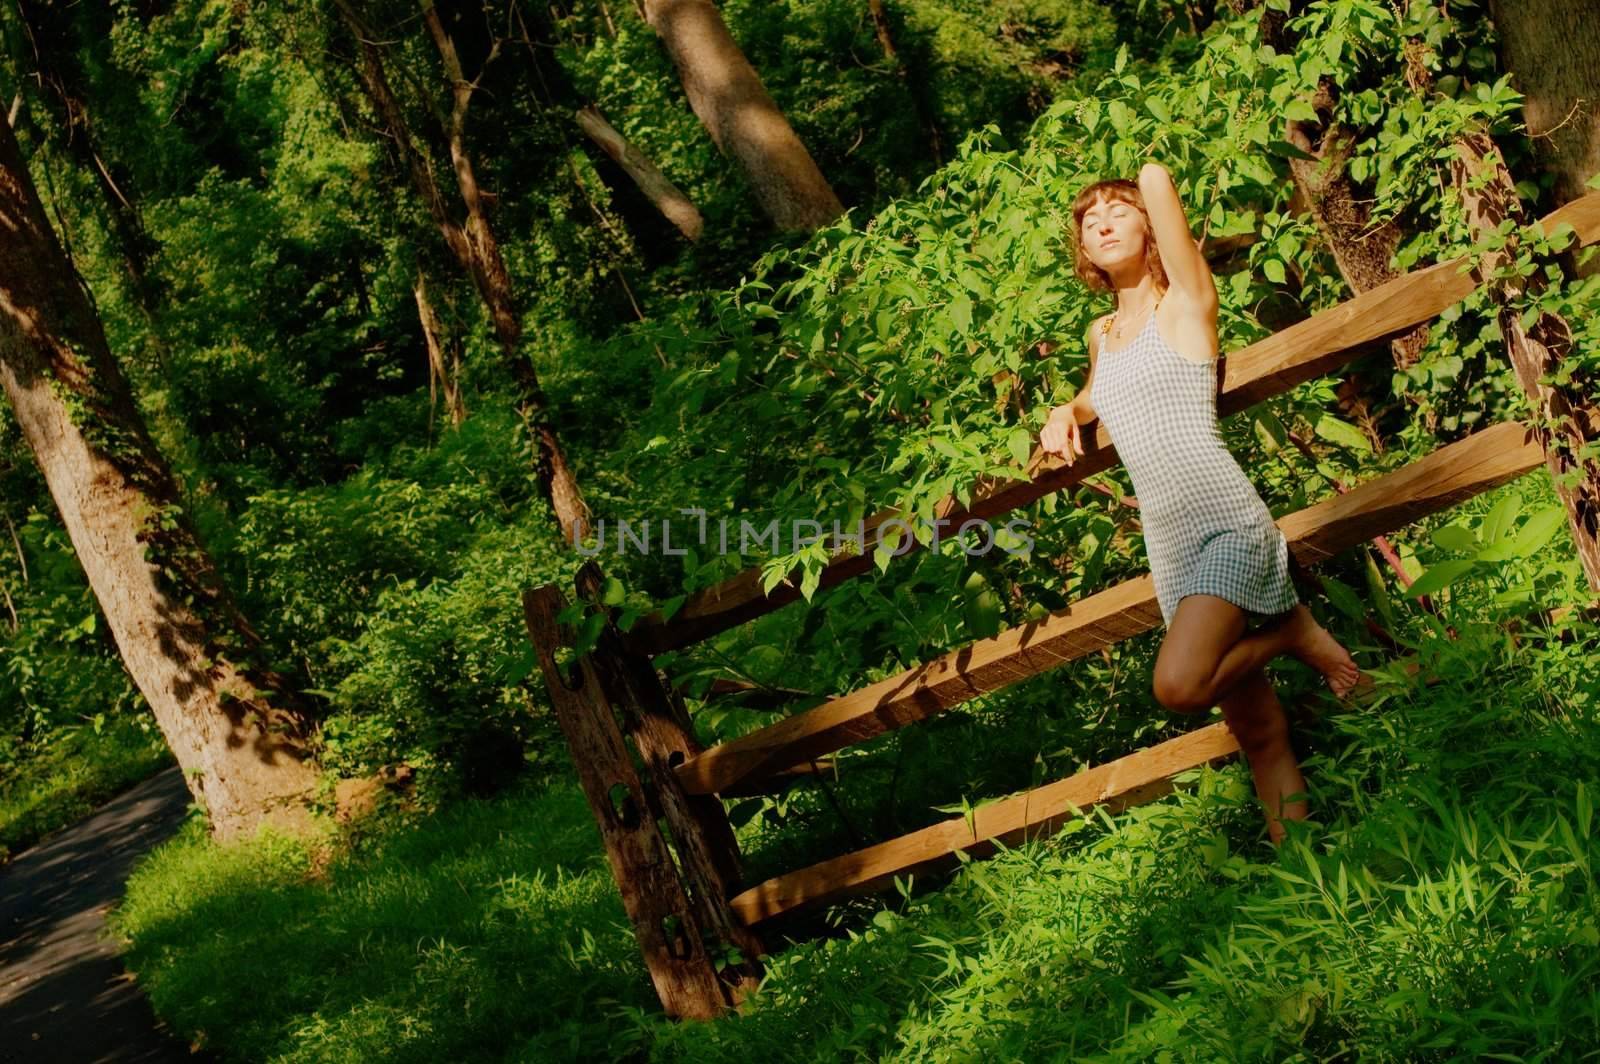 Pretty Girl in Woods by cardmaverick